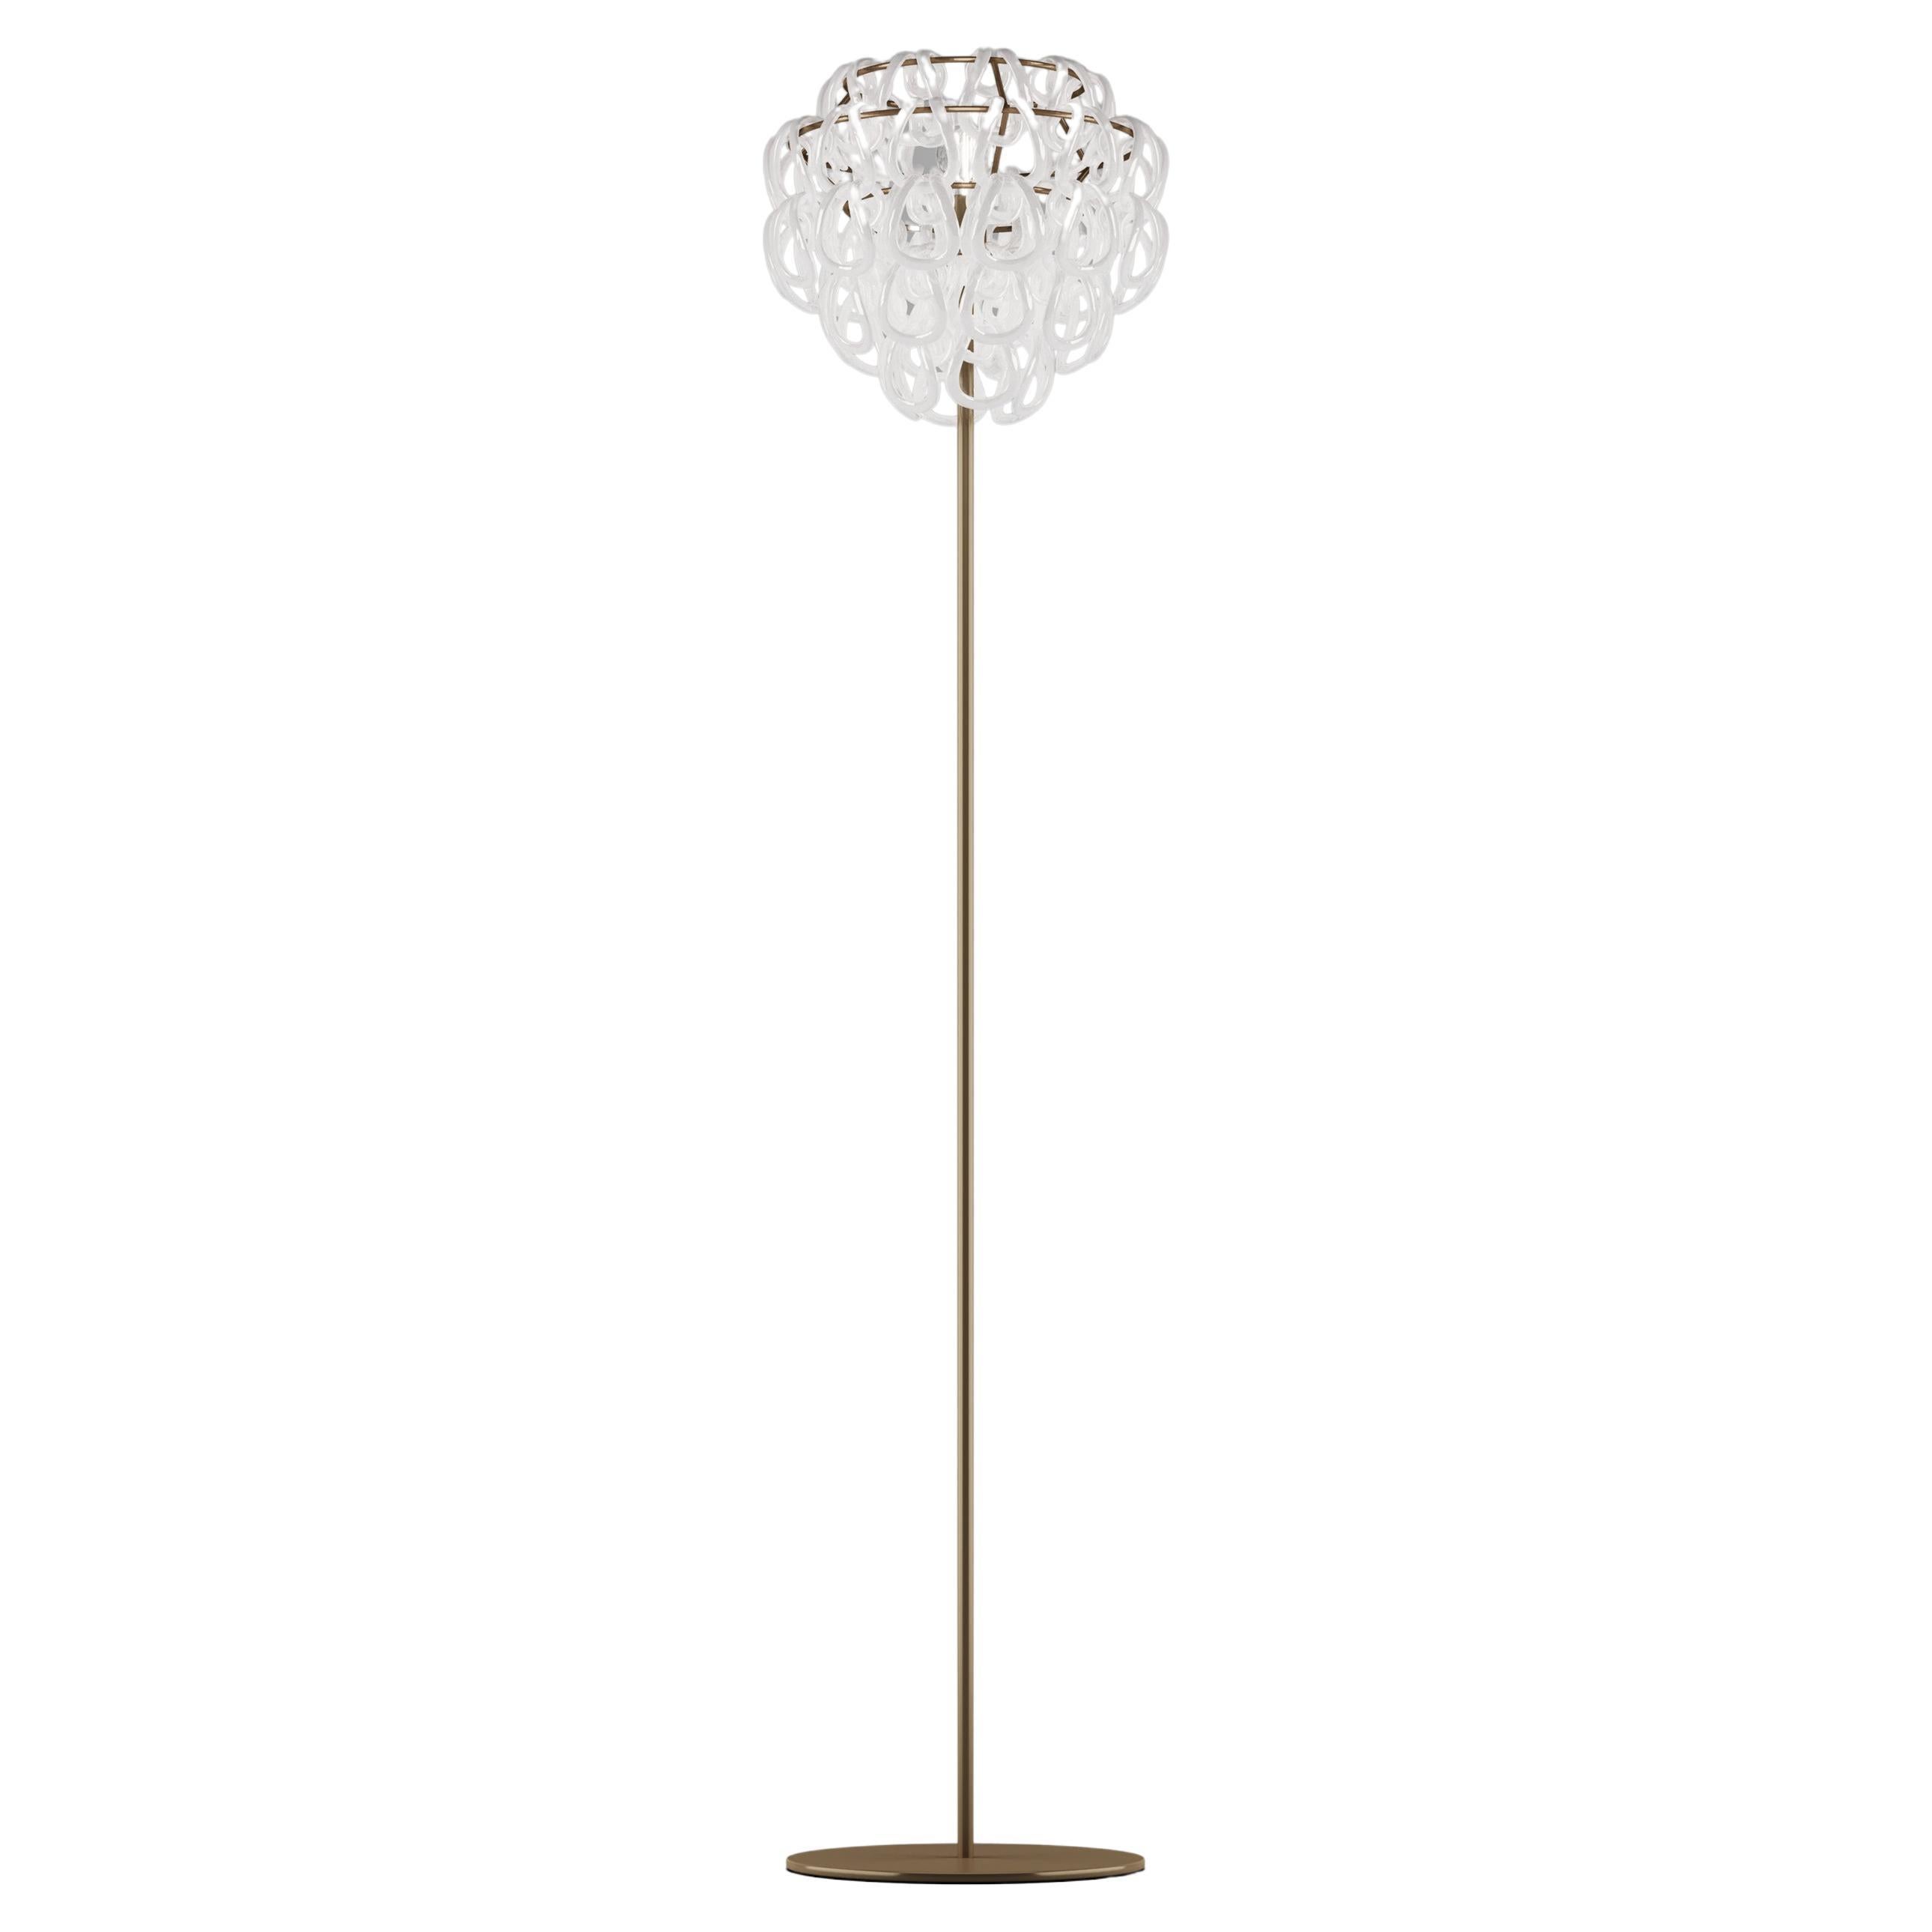 Vistosi Giogali Floor Lamp in White Glass And Matt Bronze Frame For Sale